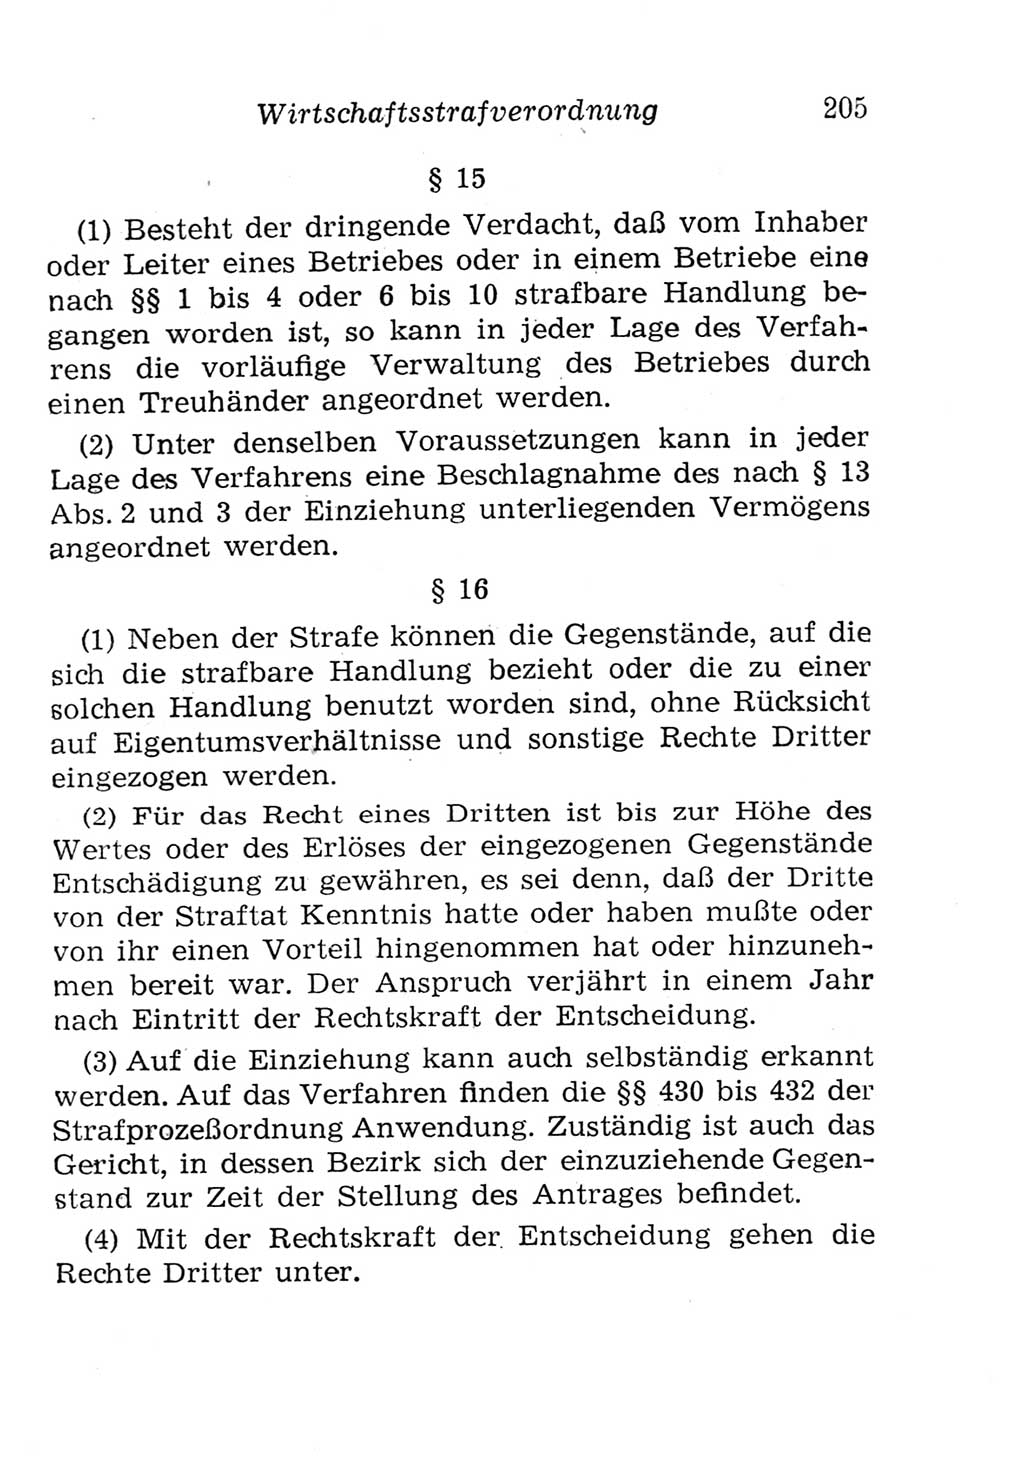 Strafgesetzbuch (StGB) und andere Strafgesetze [Deutsche Demokratische Republik (DDR)] 1957, Seite 205 (StGB Strafges. DDR 1957, S. 205)